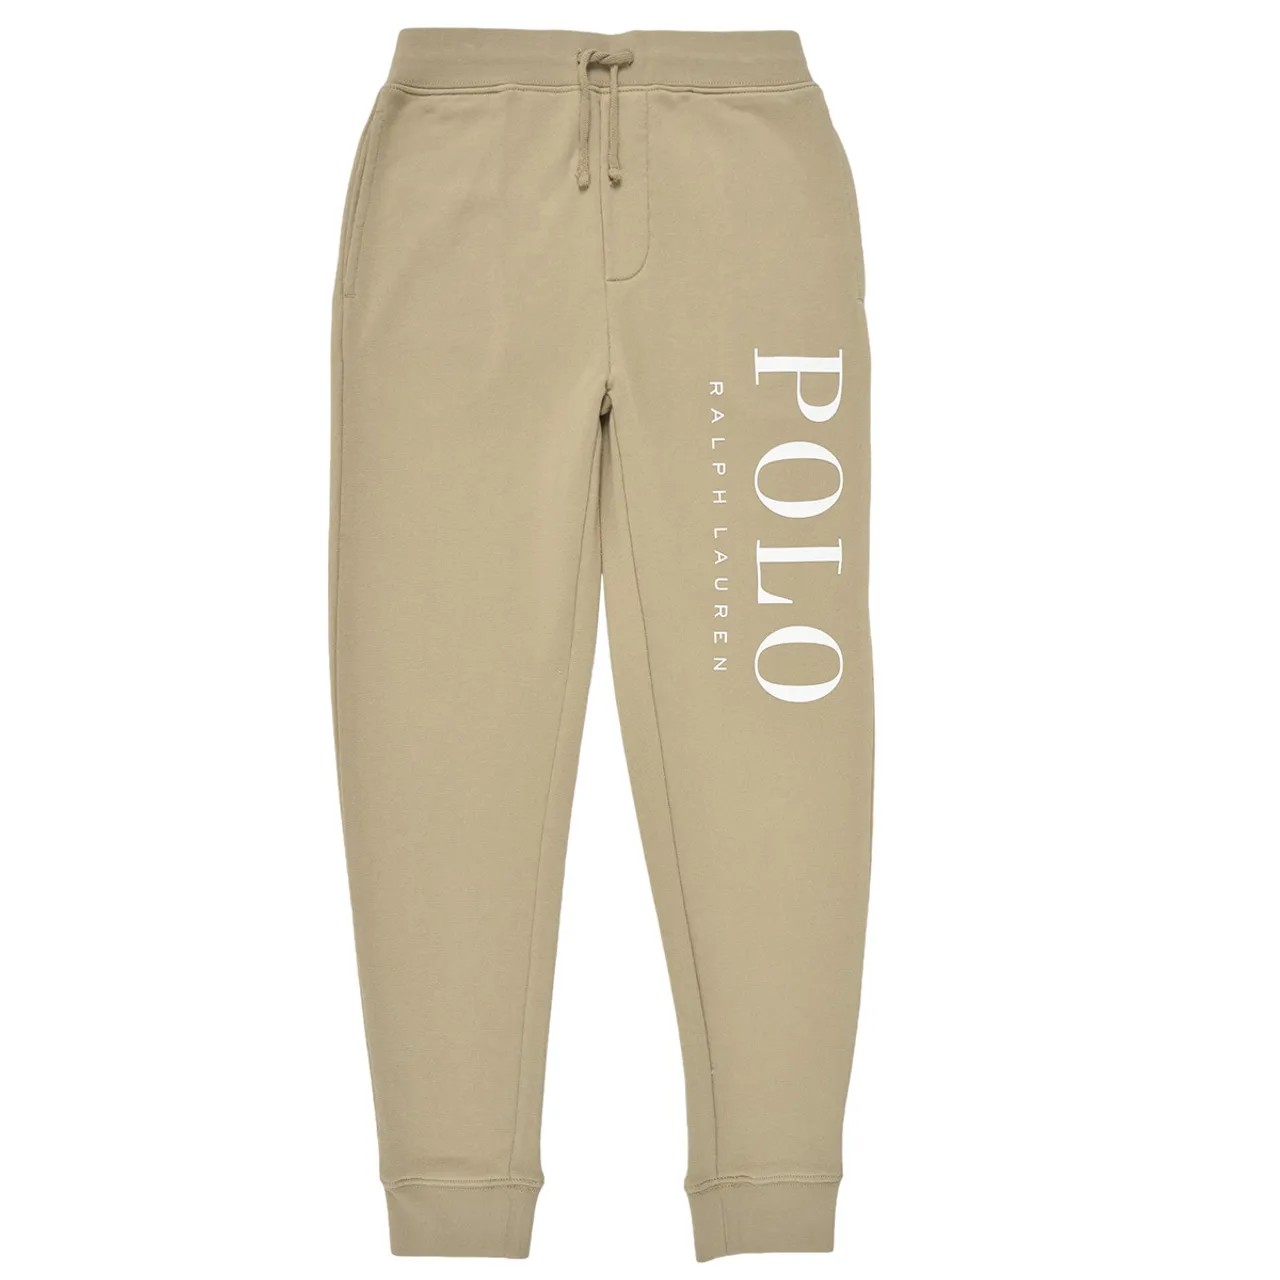 Polo Ralph Lauren  PO PANT-PANTS-ATHLETIC  boys's Children's Sportswear in Beige